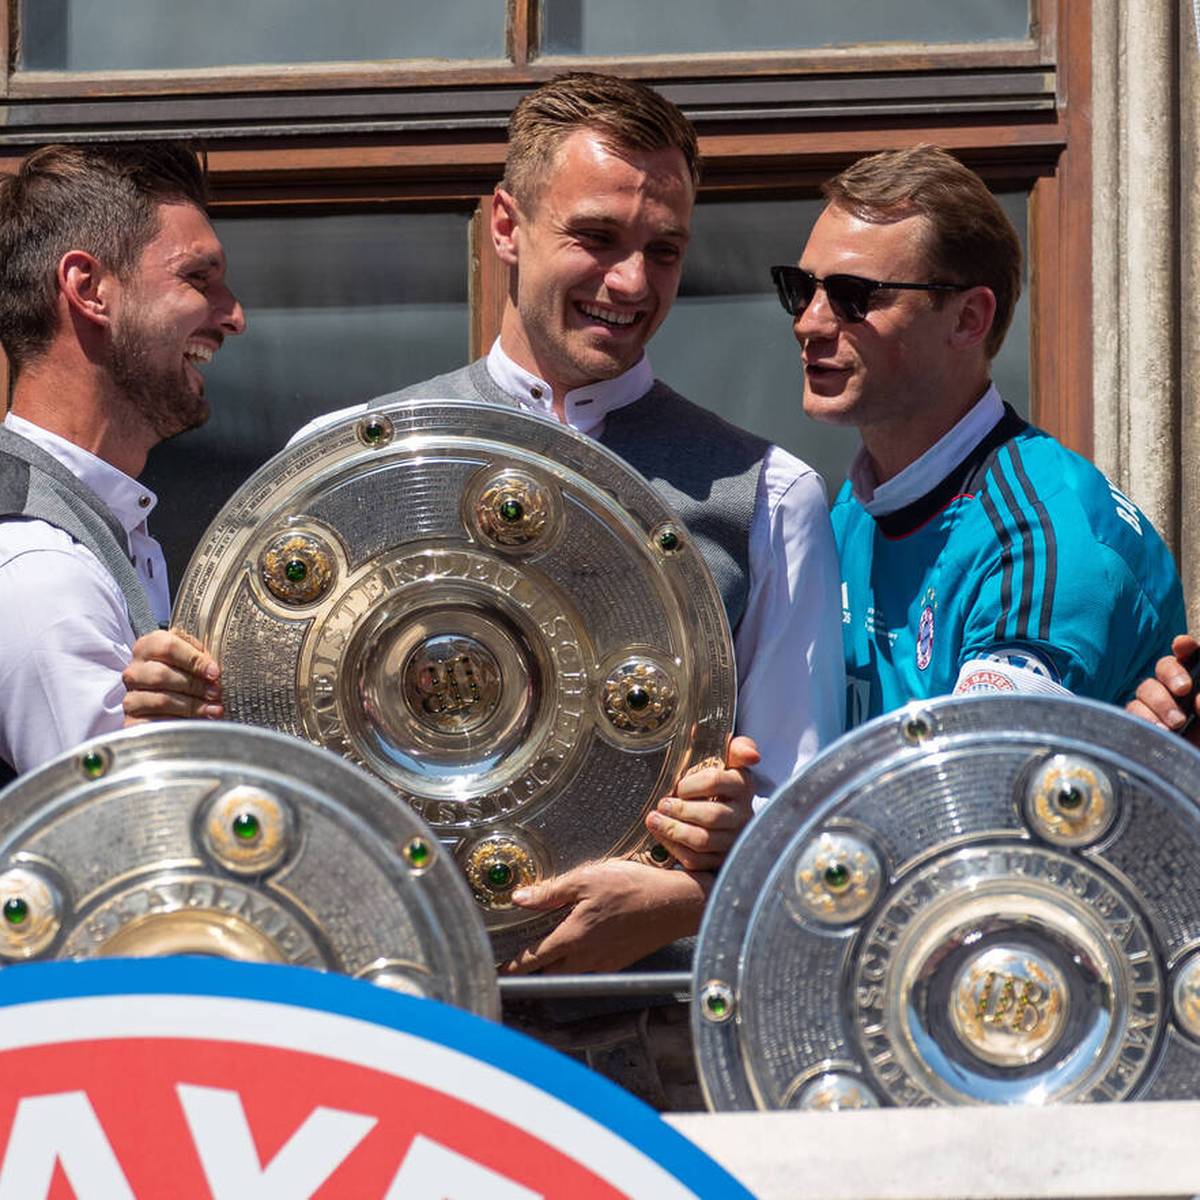 Nach Thomas Müller verlängert auch Manuel Neuer seinen Vertrag beim FC Bayern. Die Laufzeit ist identisch mit der des Ur-Bayers.